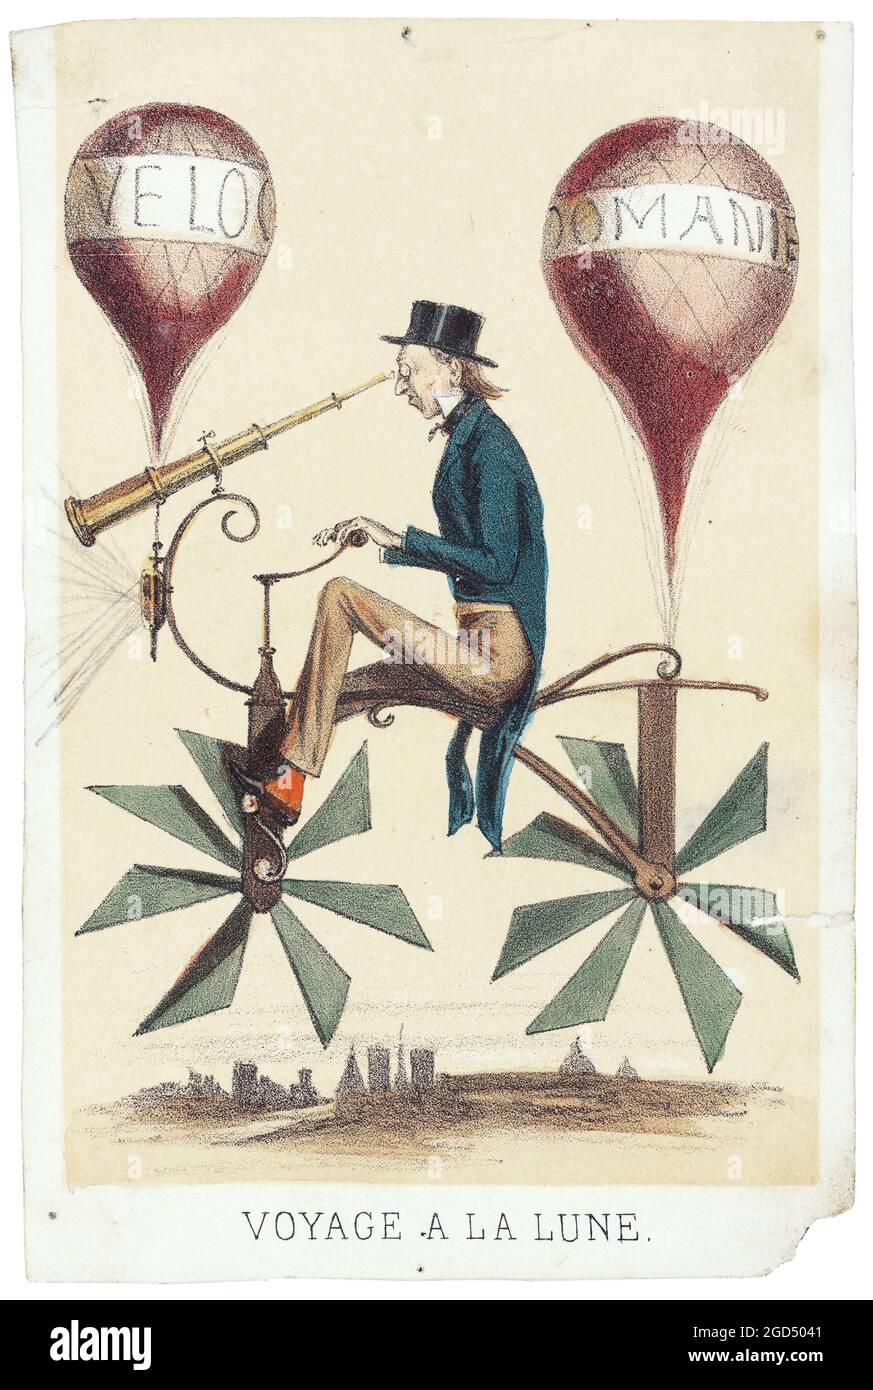 Voyage a la Lune - affiche ancienne française. Ballon de vélo (avion) - 1865. Veloc[ipedes], dessin animé / illustré. Banque D'Images